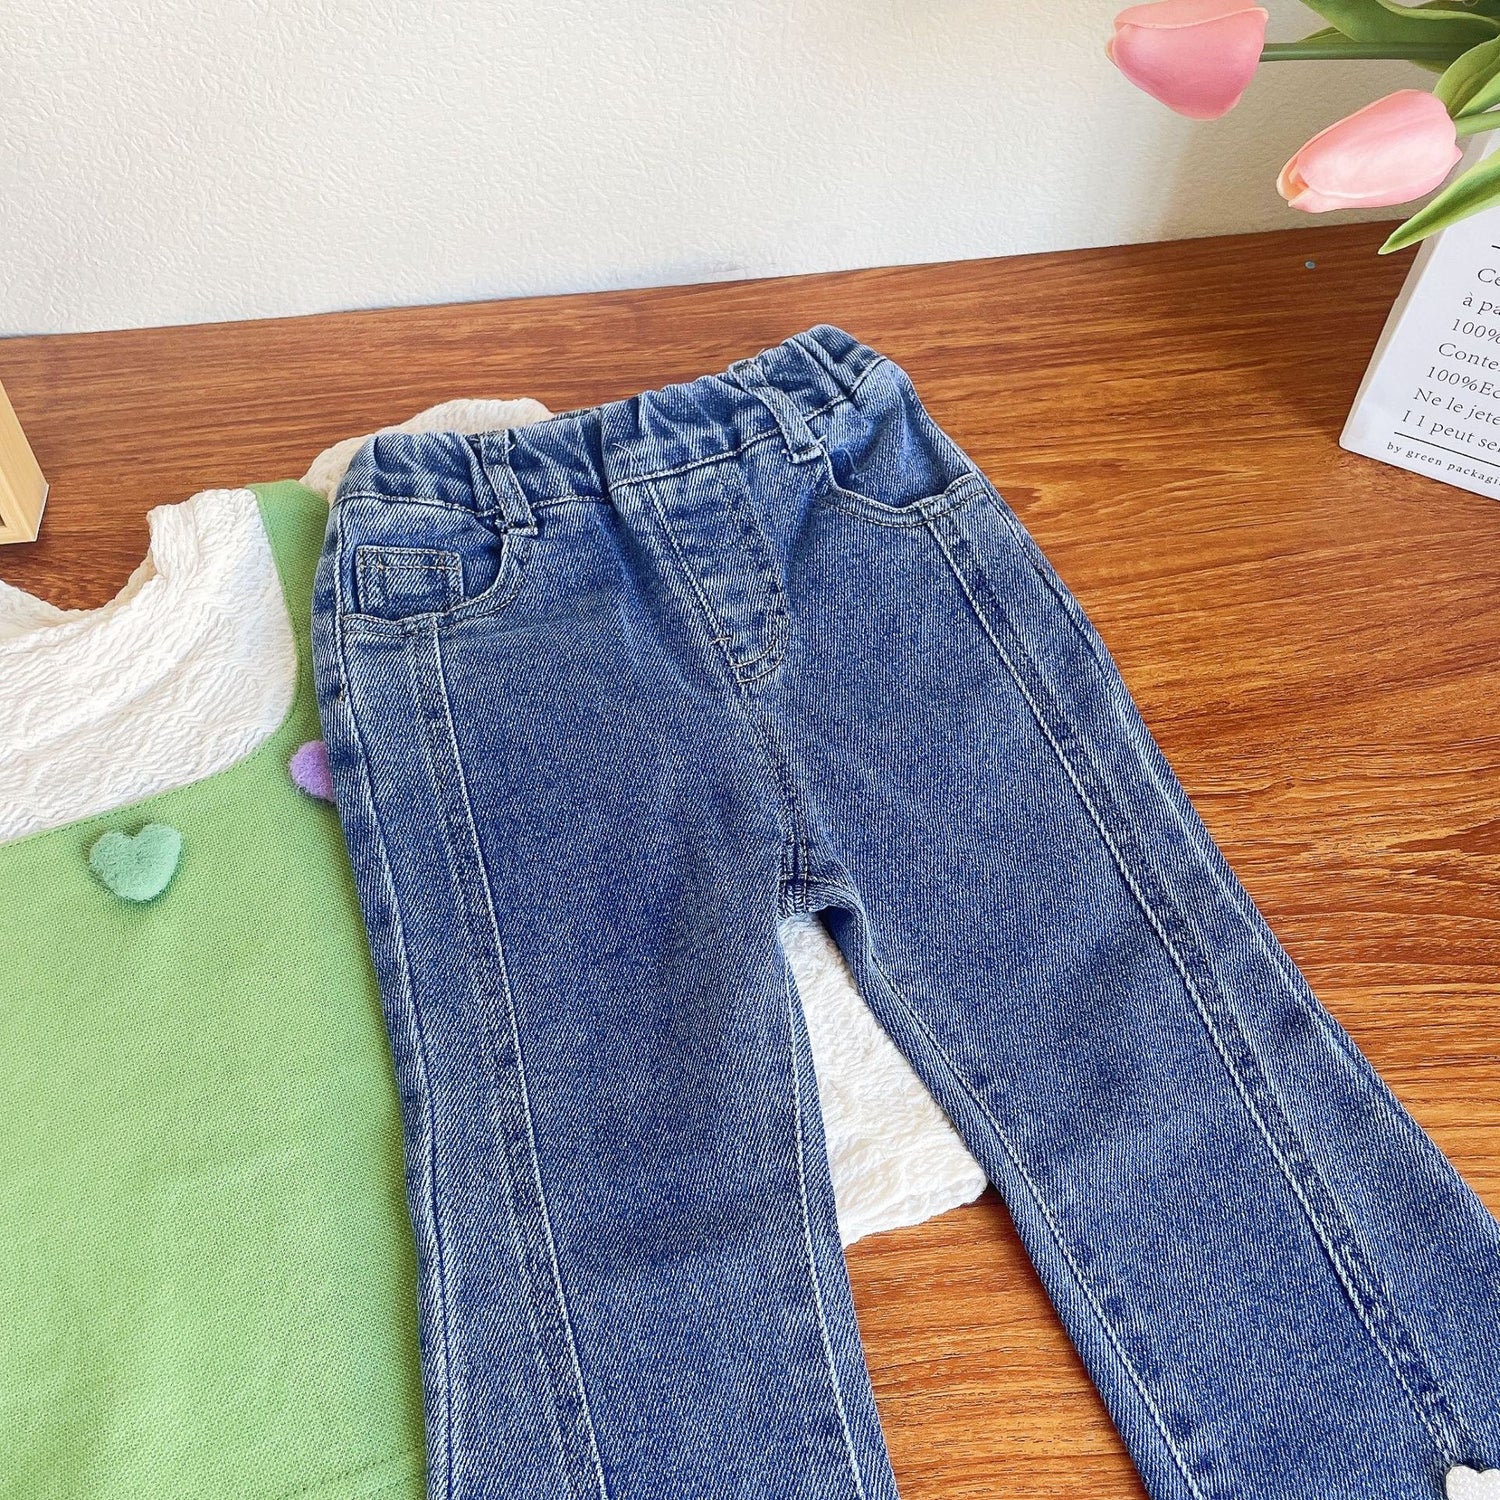 [363597] - Setelan Blouse Celana Panjang Jeans Rawis Import Anak Perempuan - Motif Smooth Heart